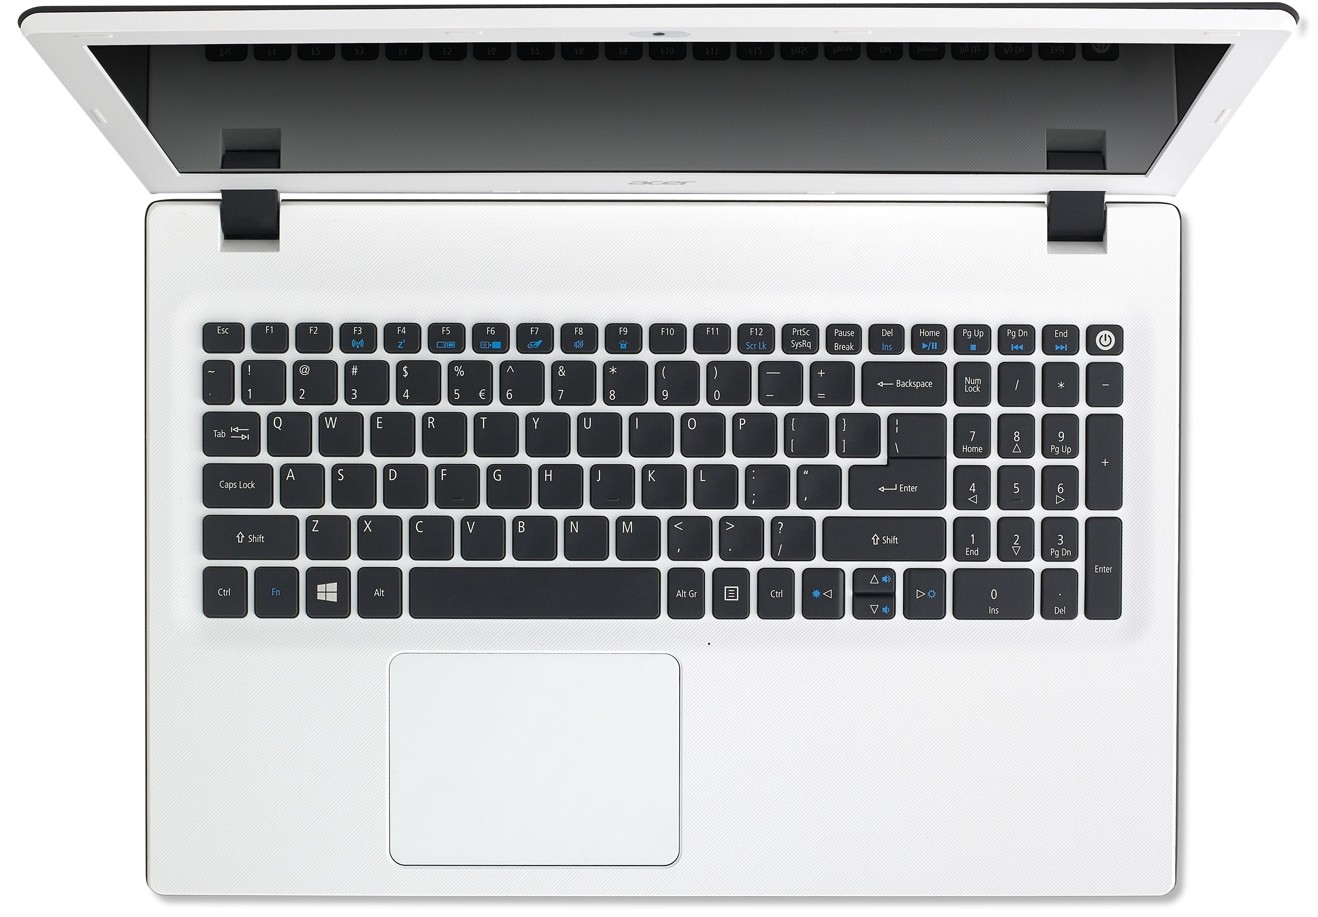 Купить Ноутбук Acer Aspire E15 573g